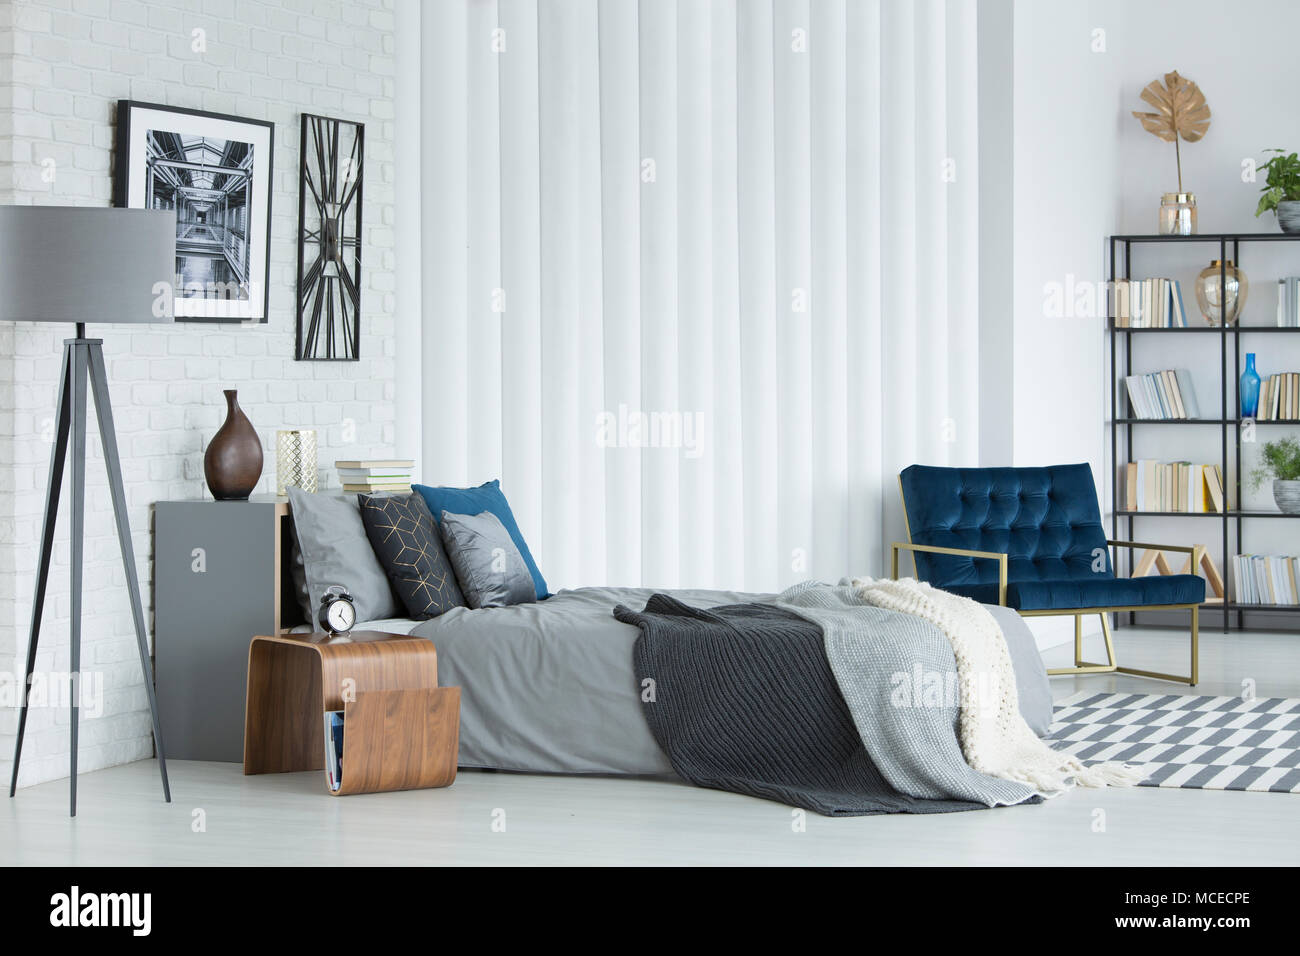 Grau Lampe neben dem Bett gegen weiße Wand mit Plakat und Wecker im Schlafzimmer Innenraum mit Sessel Stockfoto